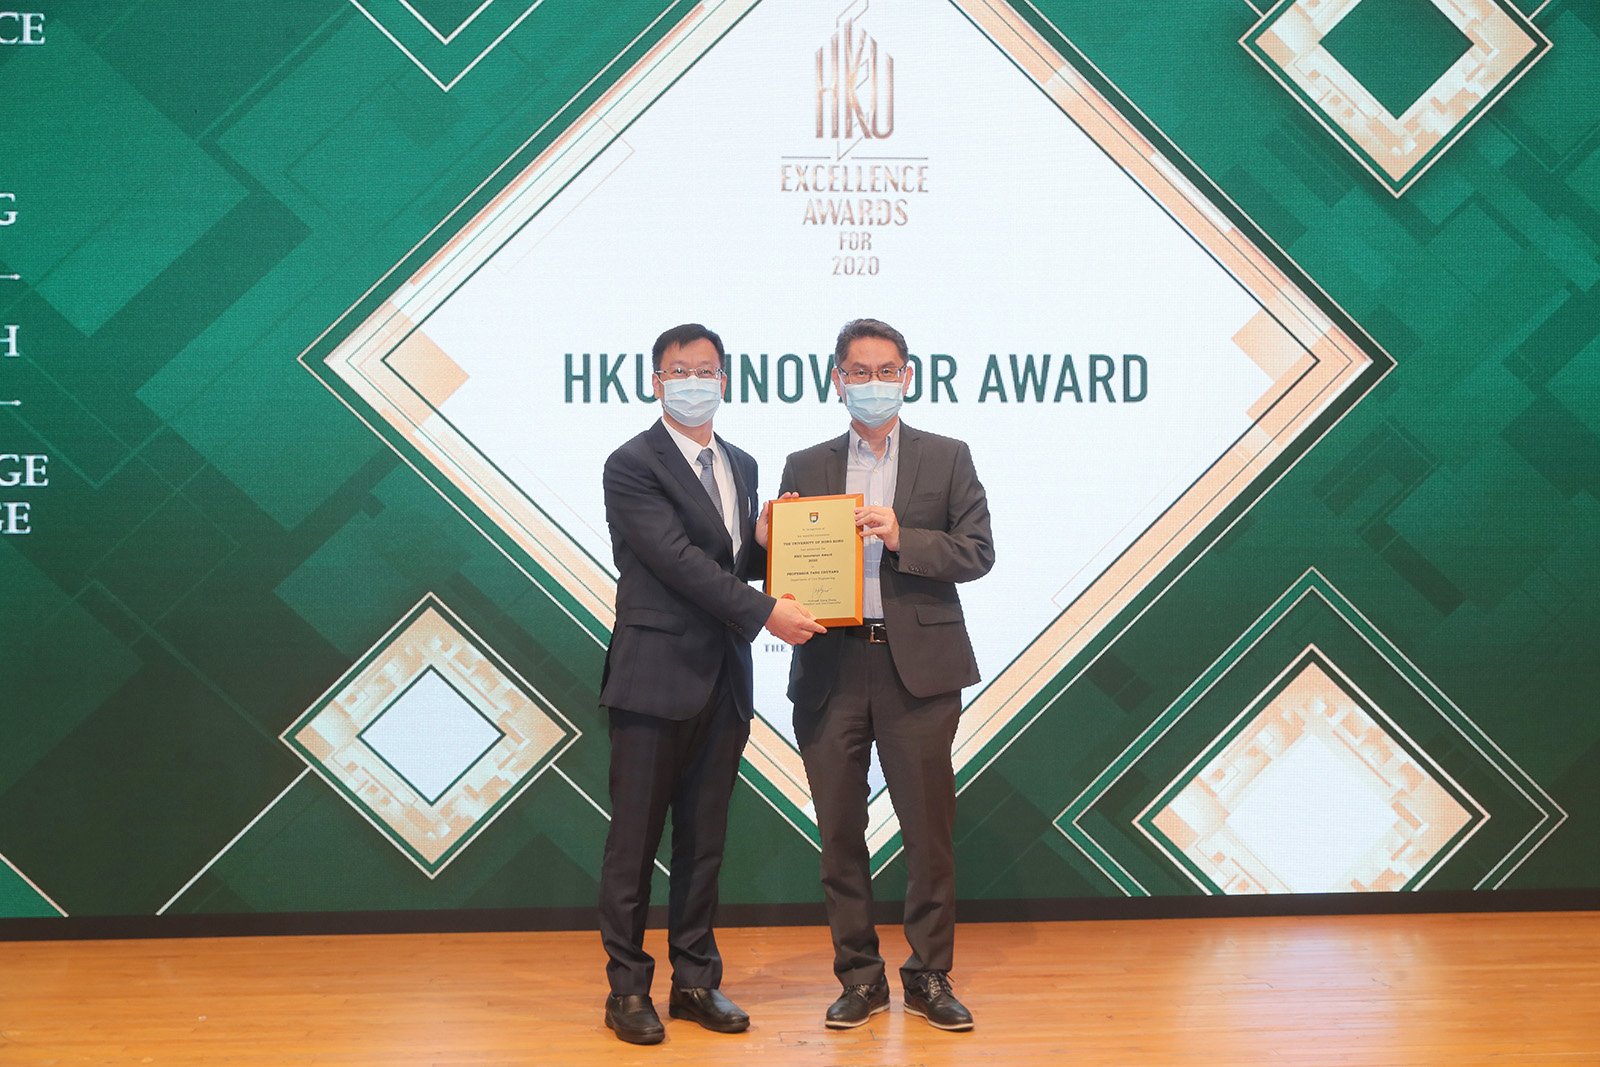 HKU Innovator Award 2020